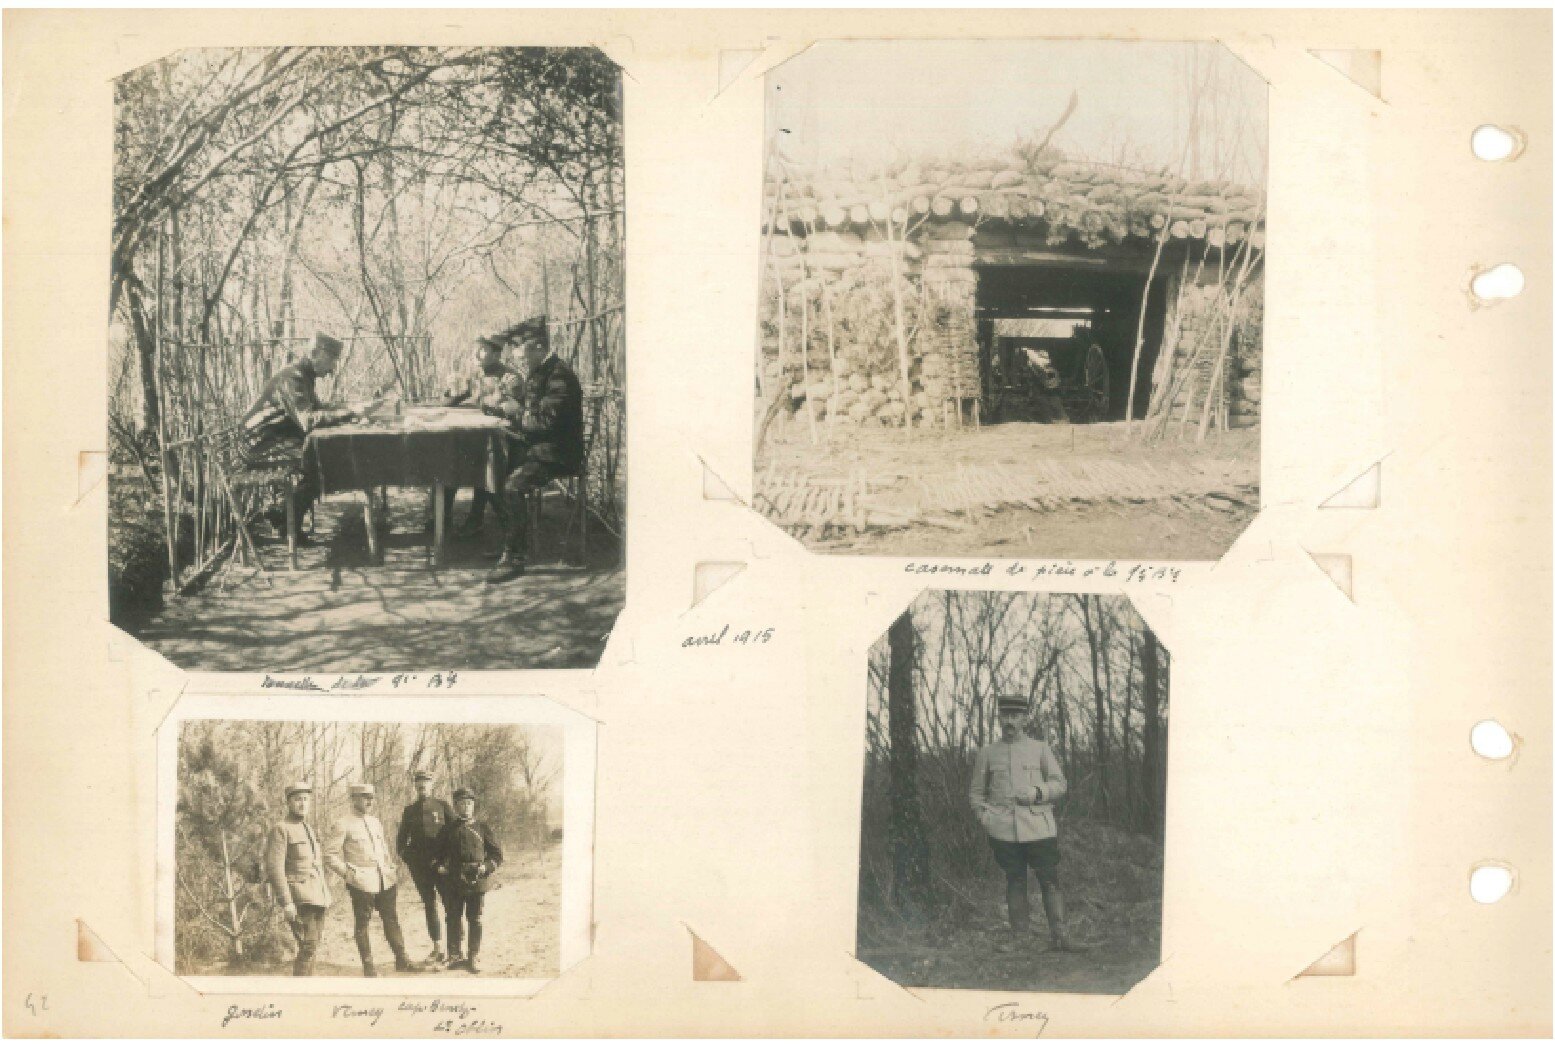 p.042 - Front de l’Aisne (13 septembre 1914 – 22 mai 1915)